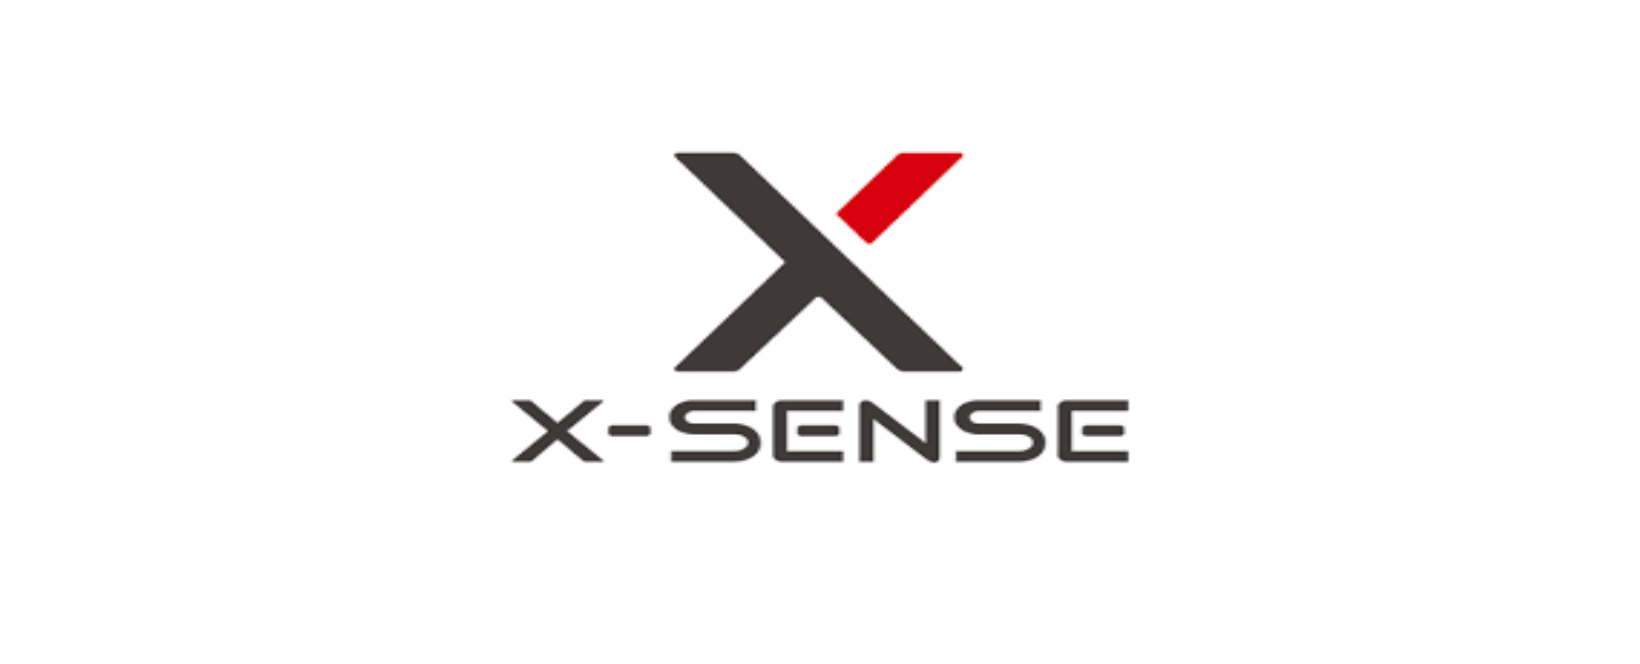 X-Sense Discount Code 2022